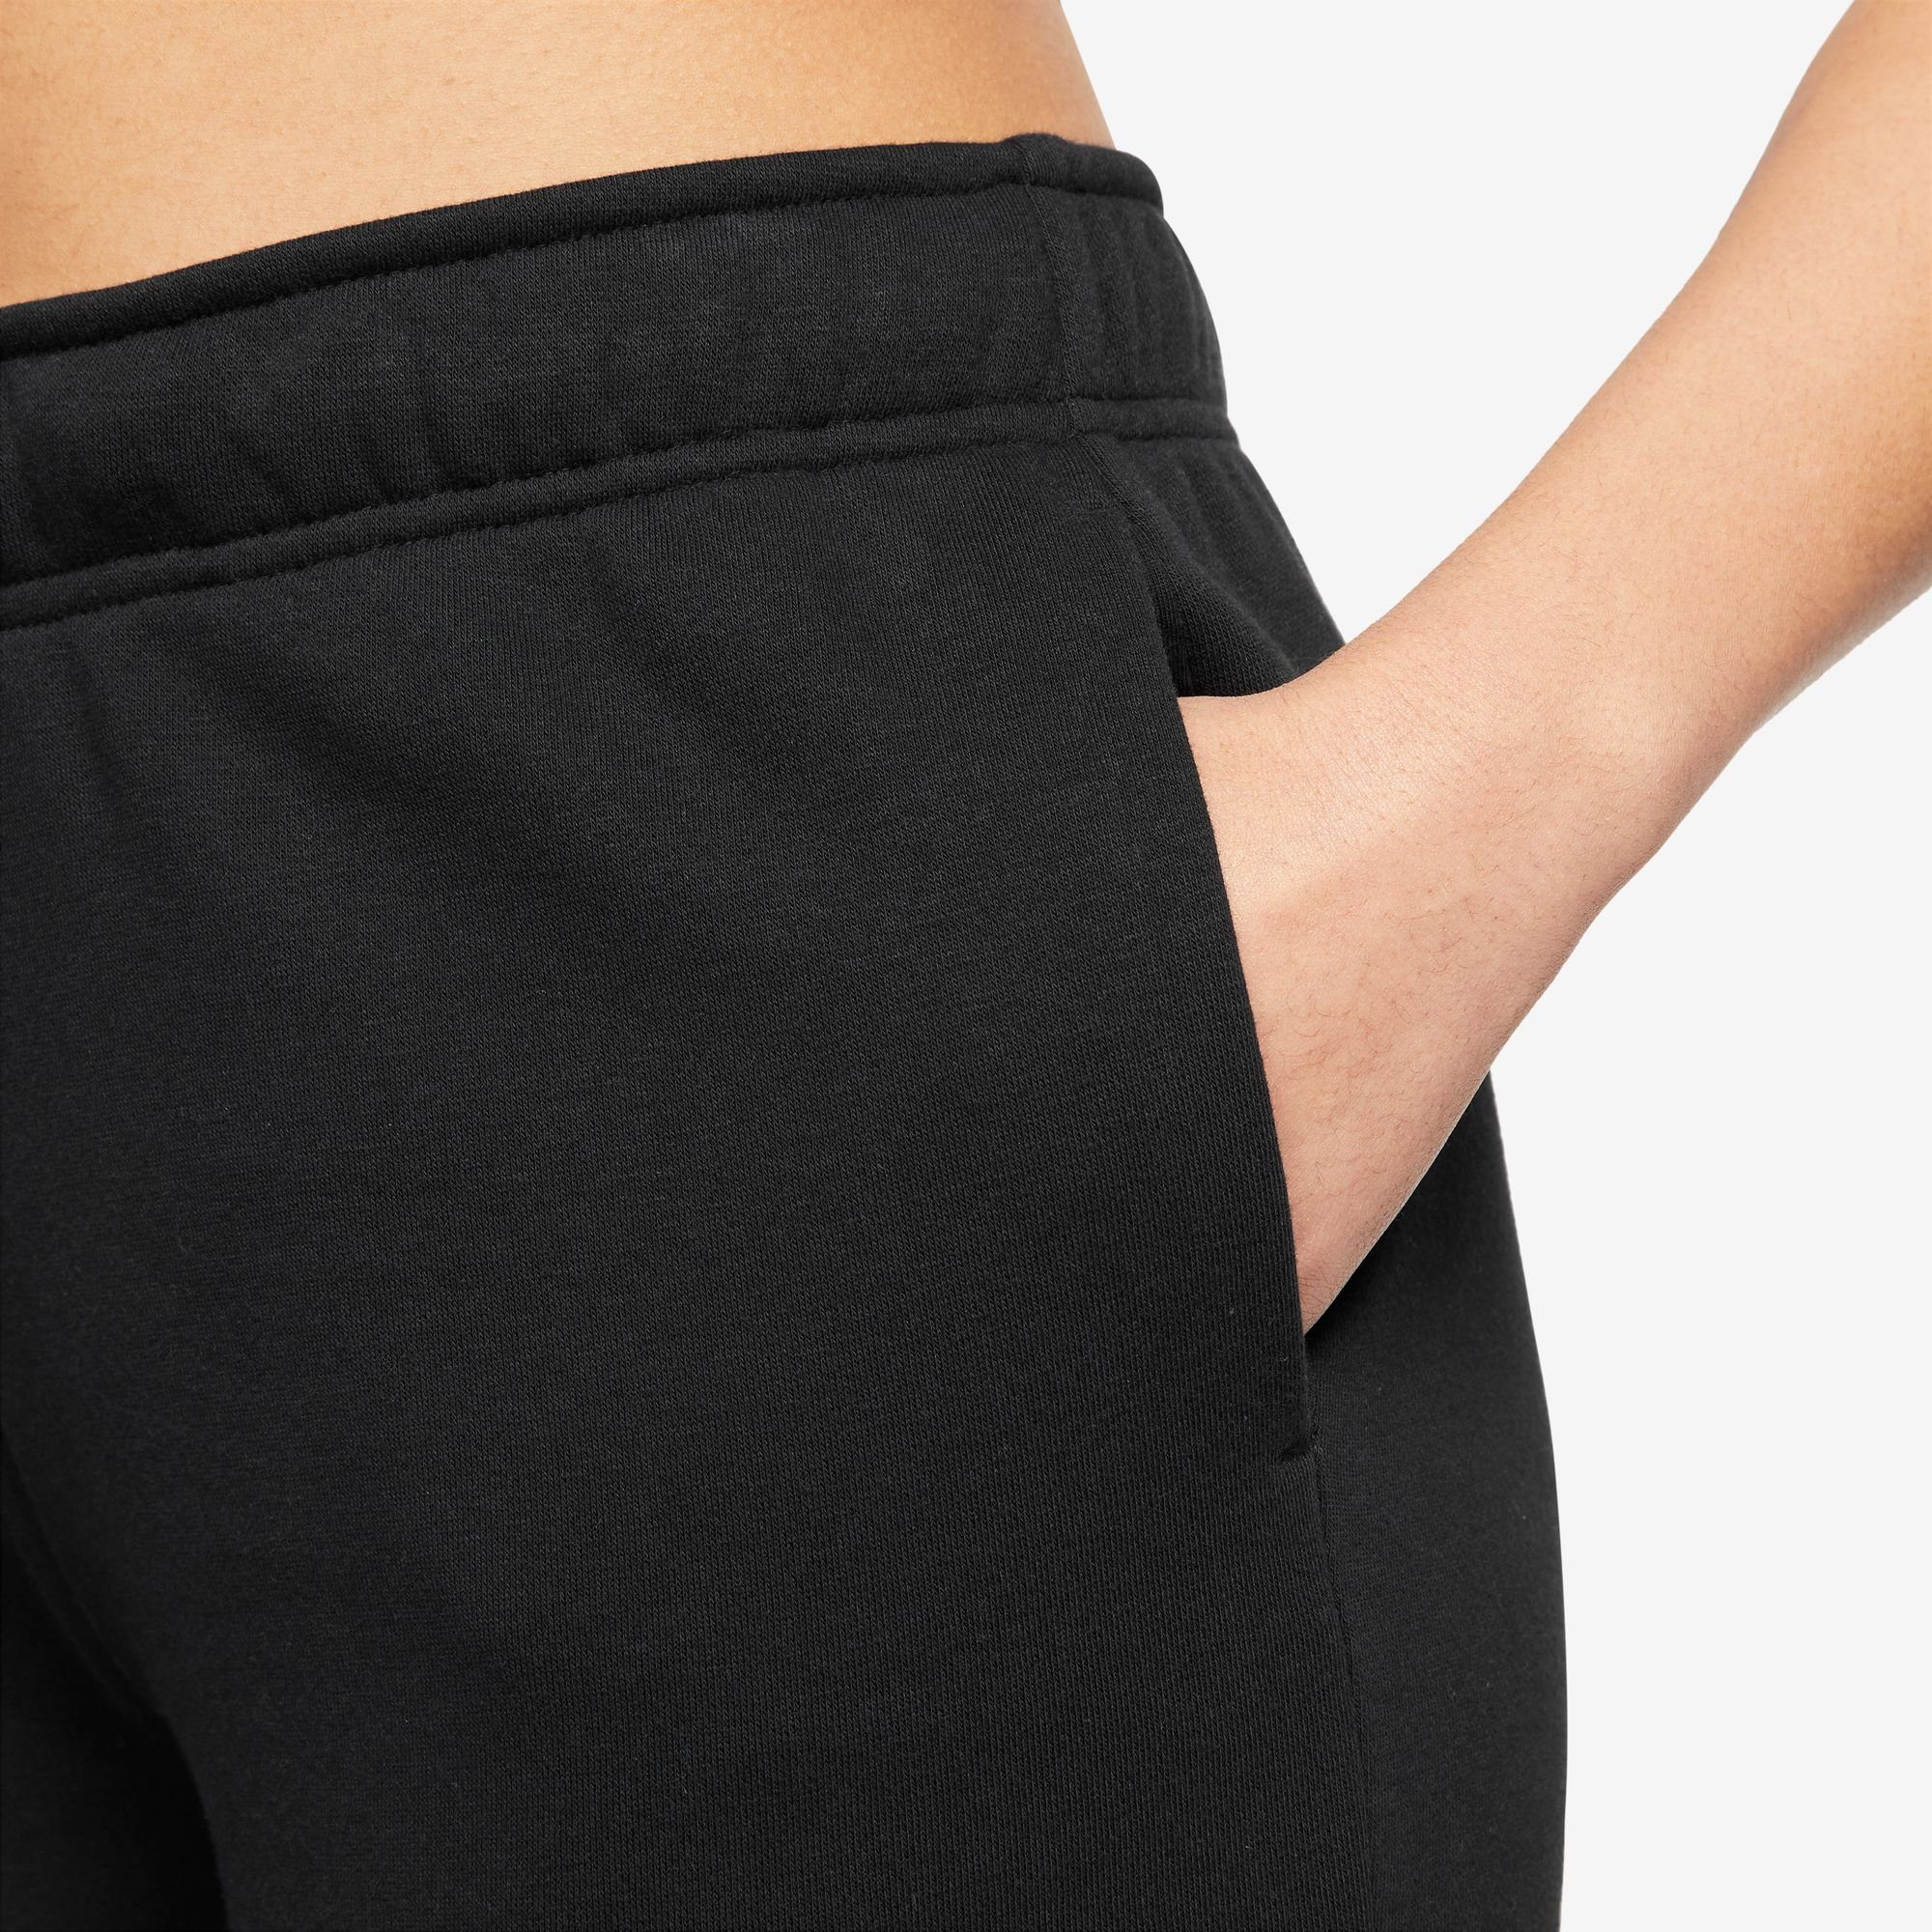 Nike Sportswear Joggingbroek CLUB FLEECE WOMEN'S SHINE MID-RISE PANTS